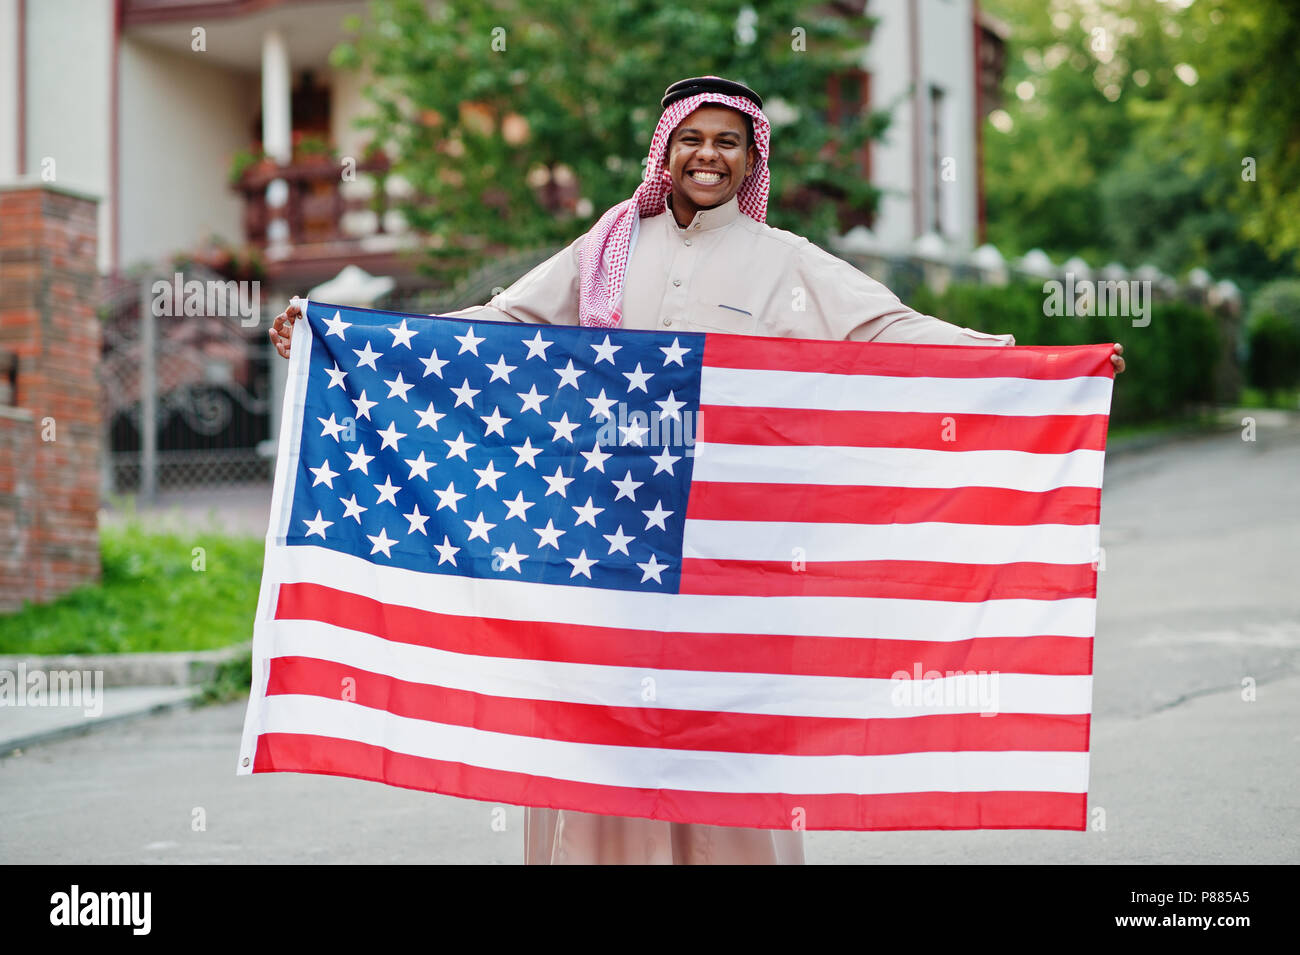 Im Nahen und Mittleren Osten arabischer Mann auf der Straße mit USA-Flagge gestellt. Amerika und arabischen Ländern Konzept. Stockfoto